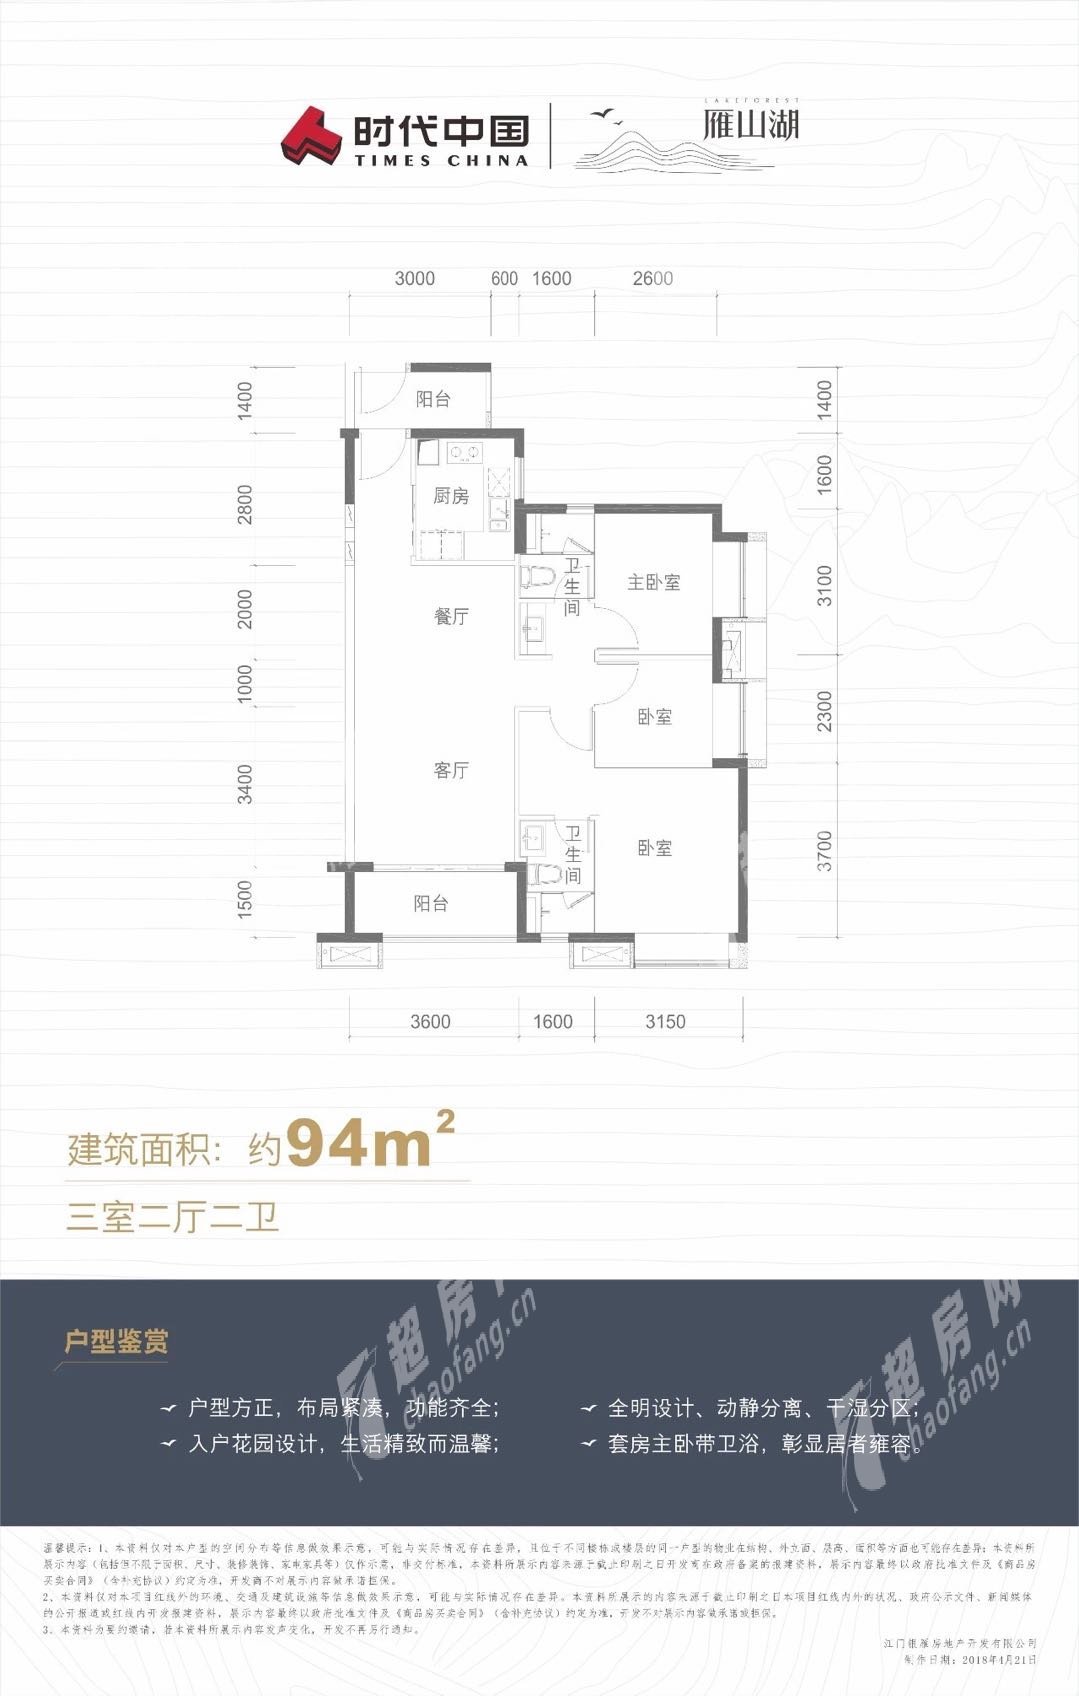 鶴山時代雁山湖（新房）新房94方戶型 3室2廳2衛戶型圖